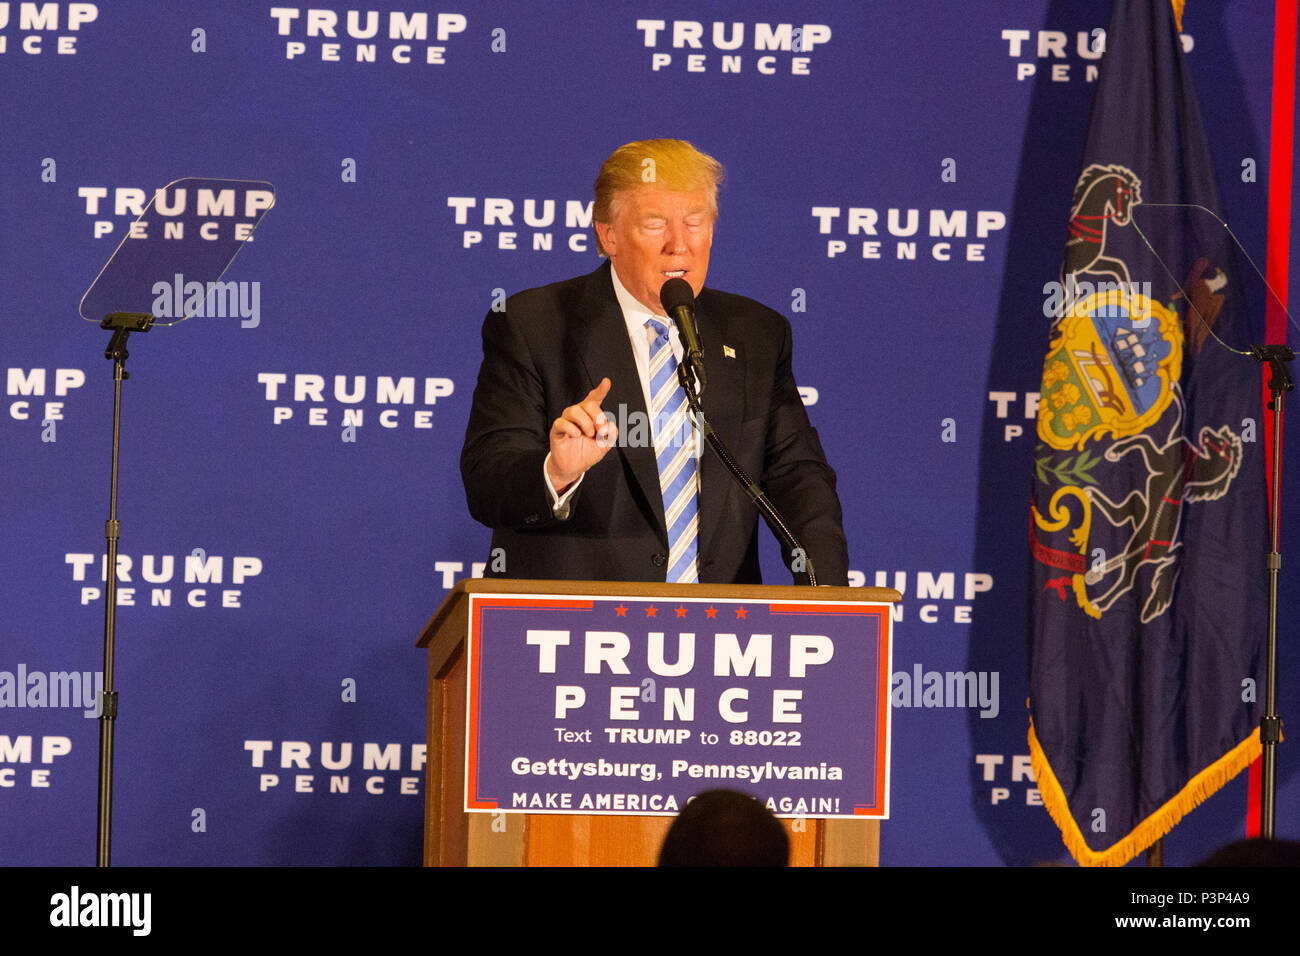 Gettysburg, PA, USA - 22 octobre 2016 : candidate présidentielle Donald Trump promettant qu'il va "drainage des marécages, à Washington. Banque D'Images